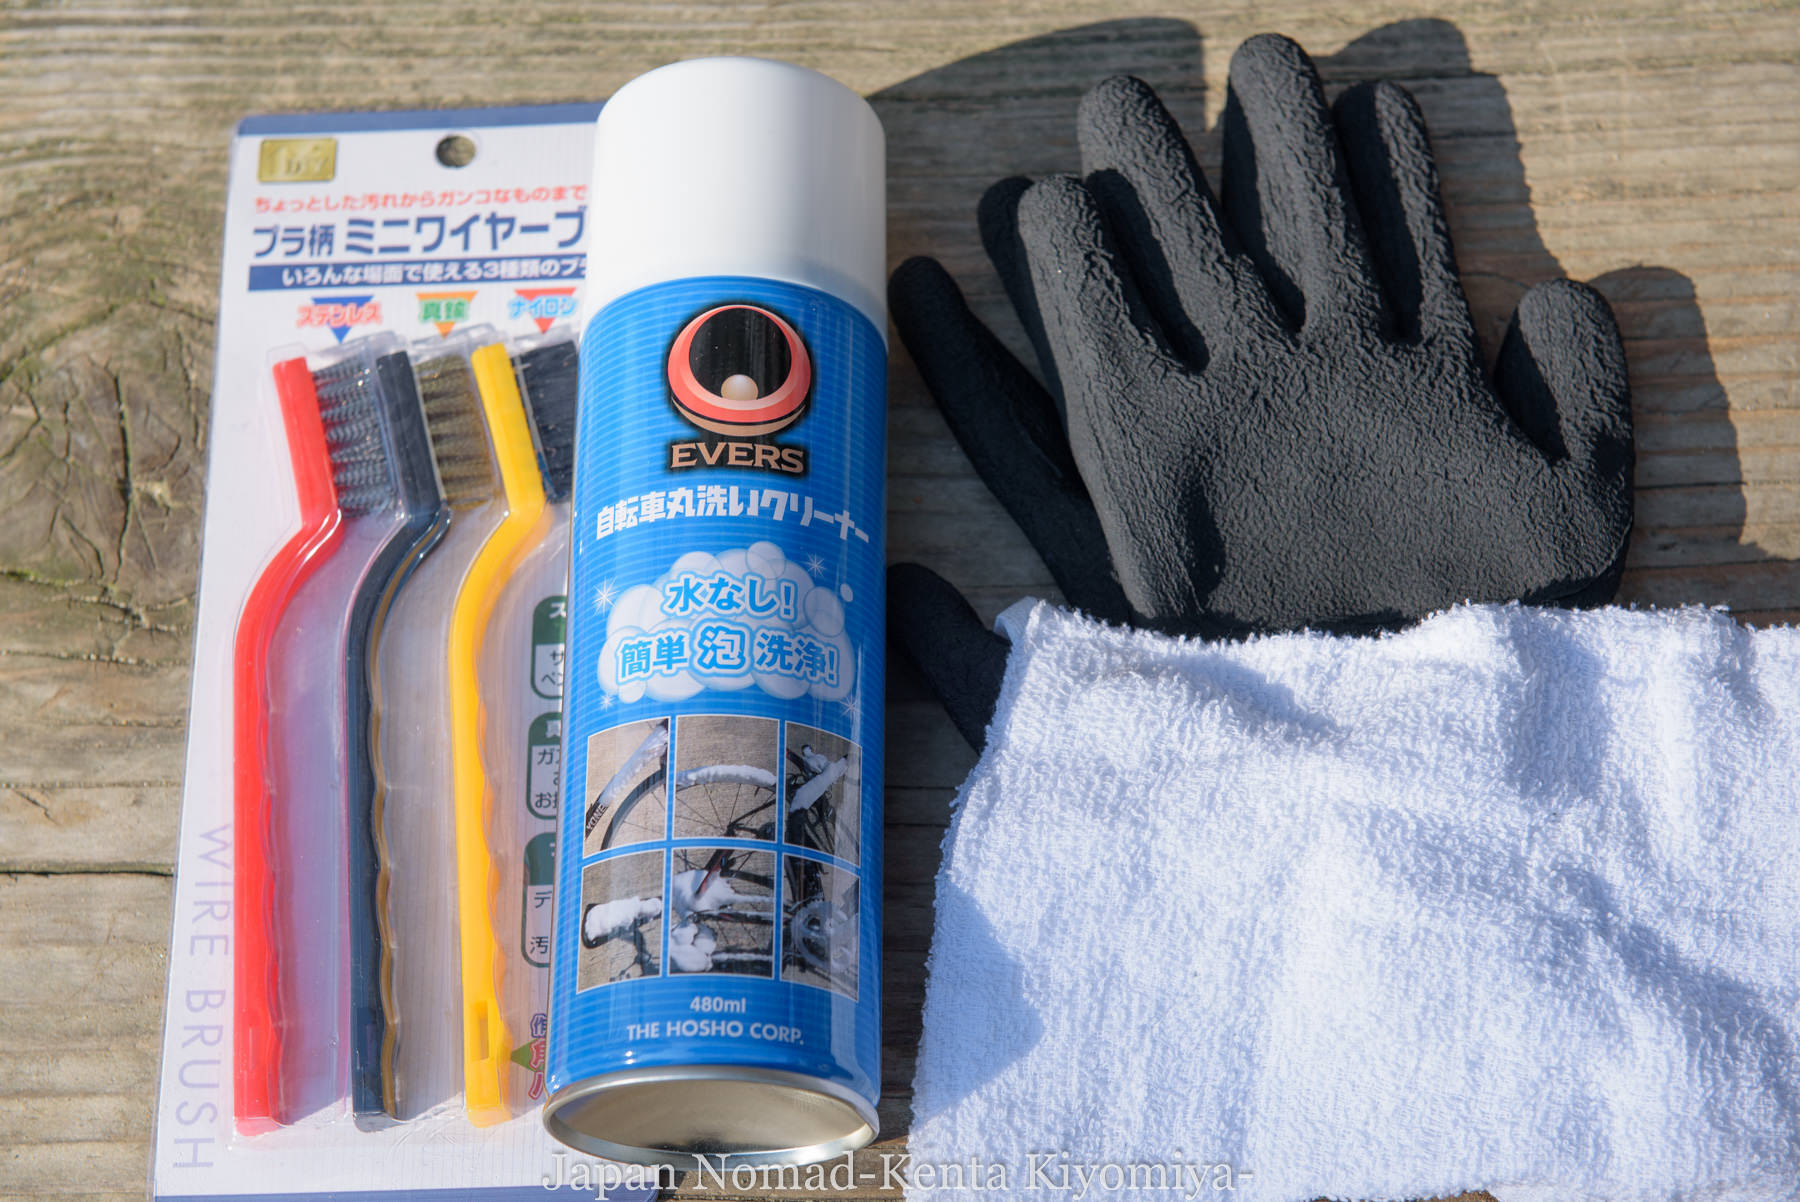 エバース自転車丸洗いクリーナー」で自転車を清掃！ - Japan Nomad 〜旅と山と写真のブログ〜